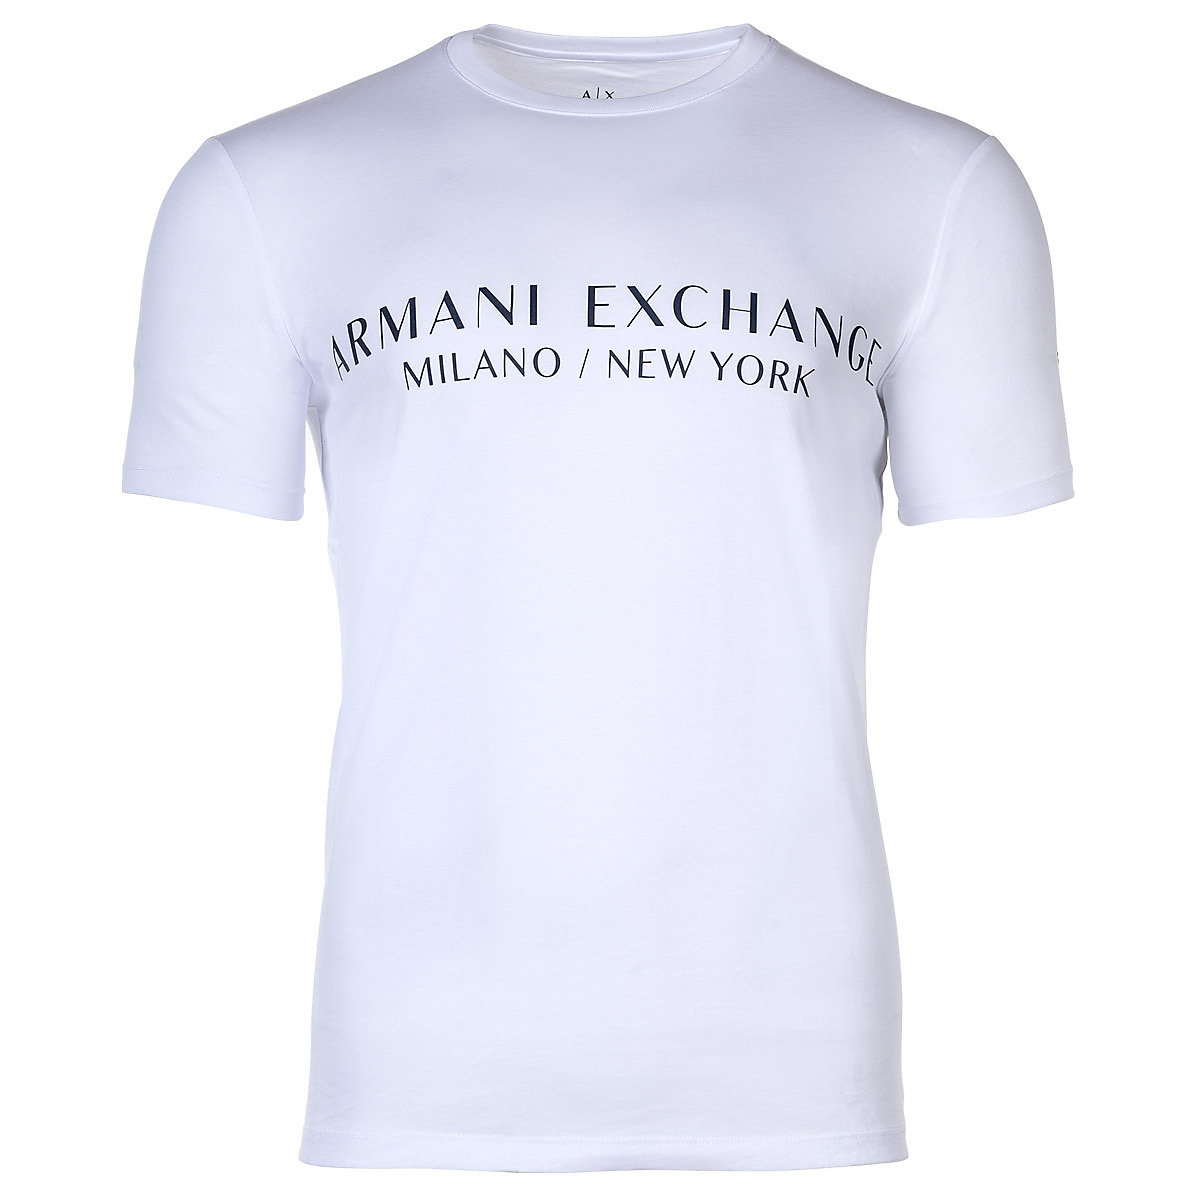 ARMANI EXCHANGE A|X Herren T-Shirt Schriftzug Rundhals Cotton Stretch T-Shirts weiß